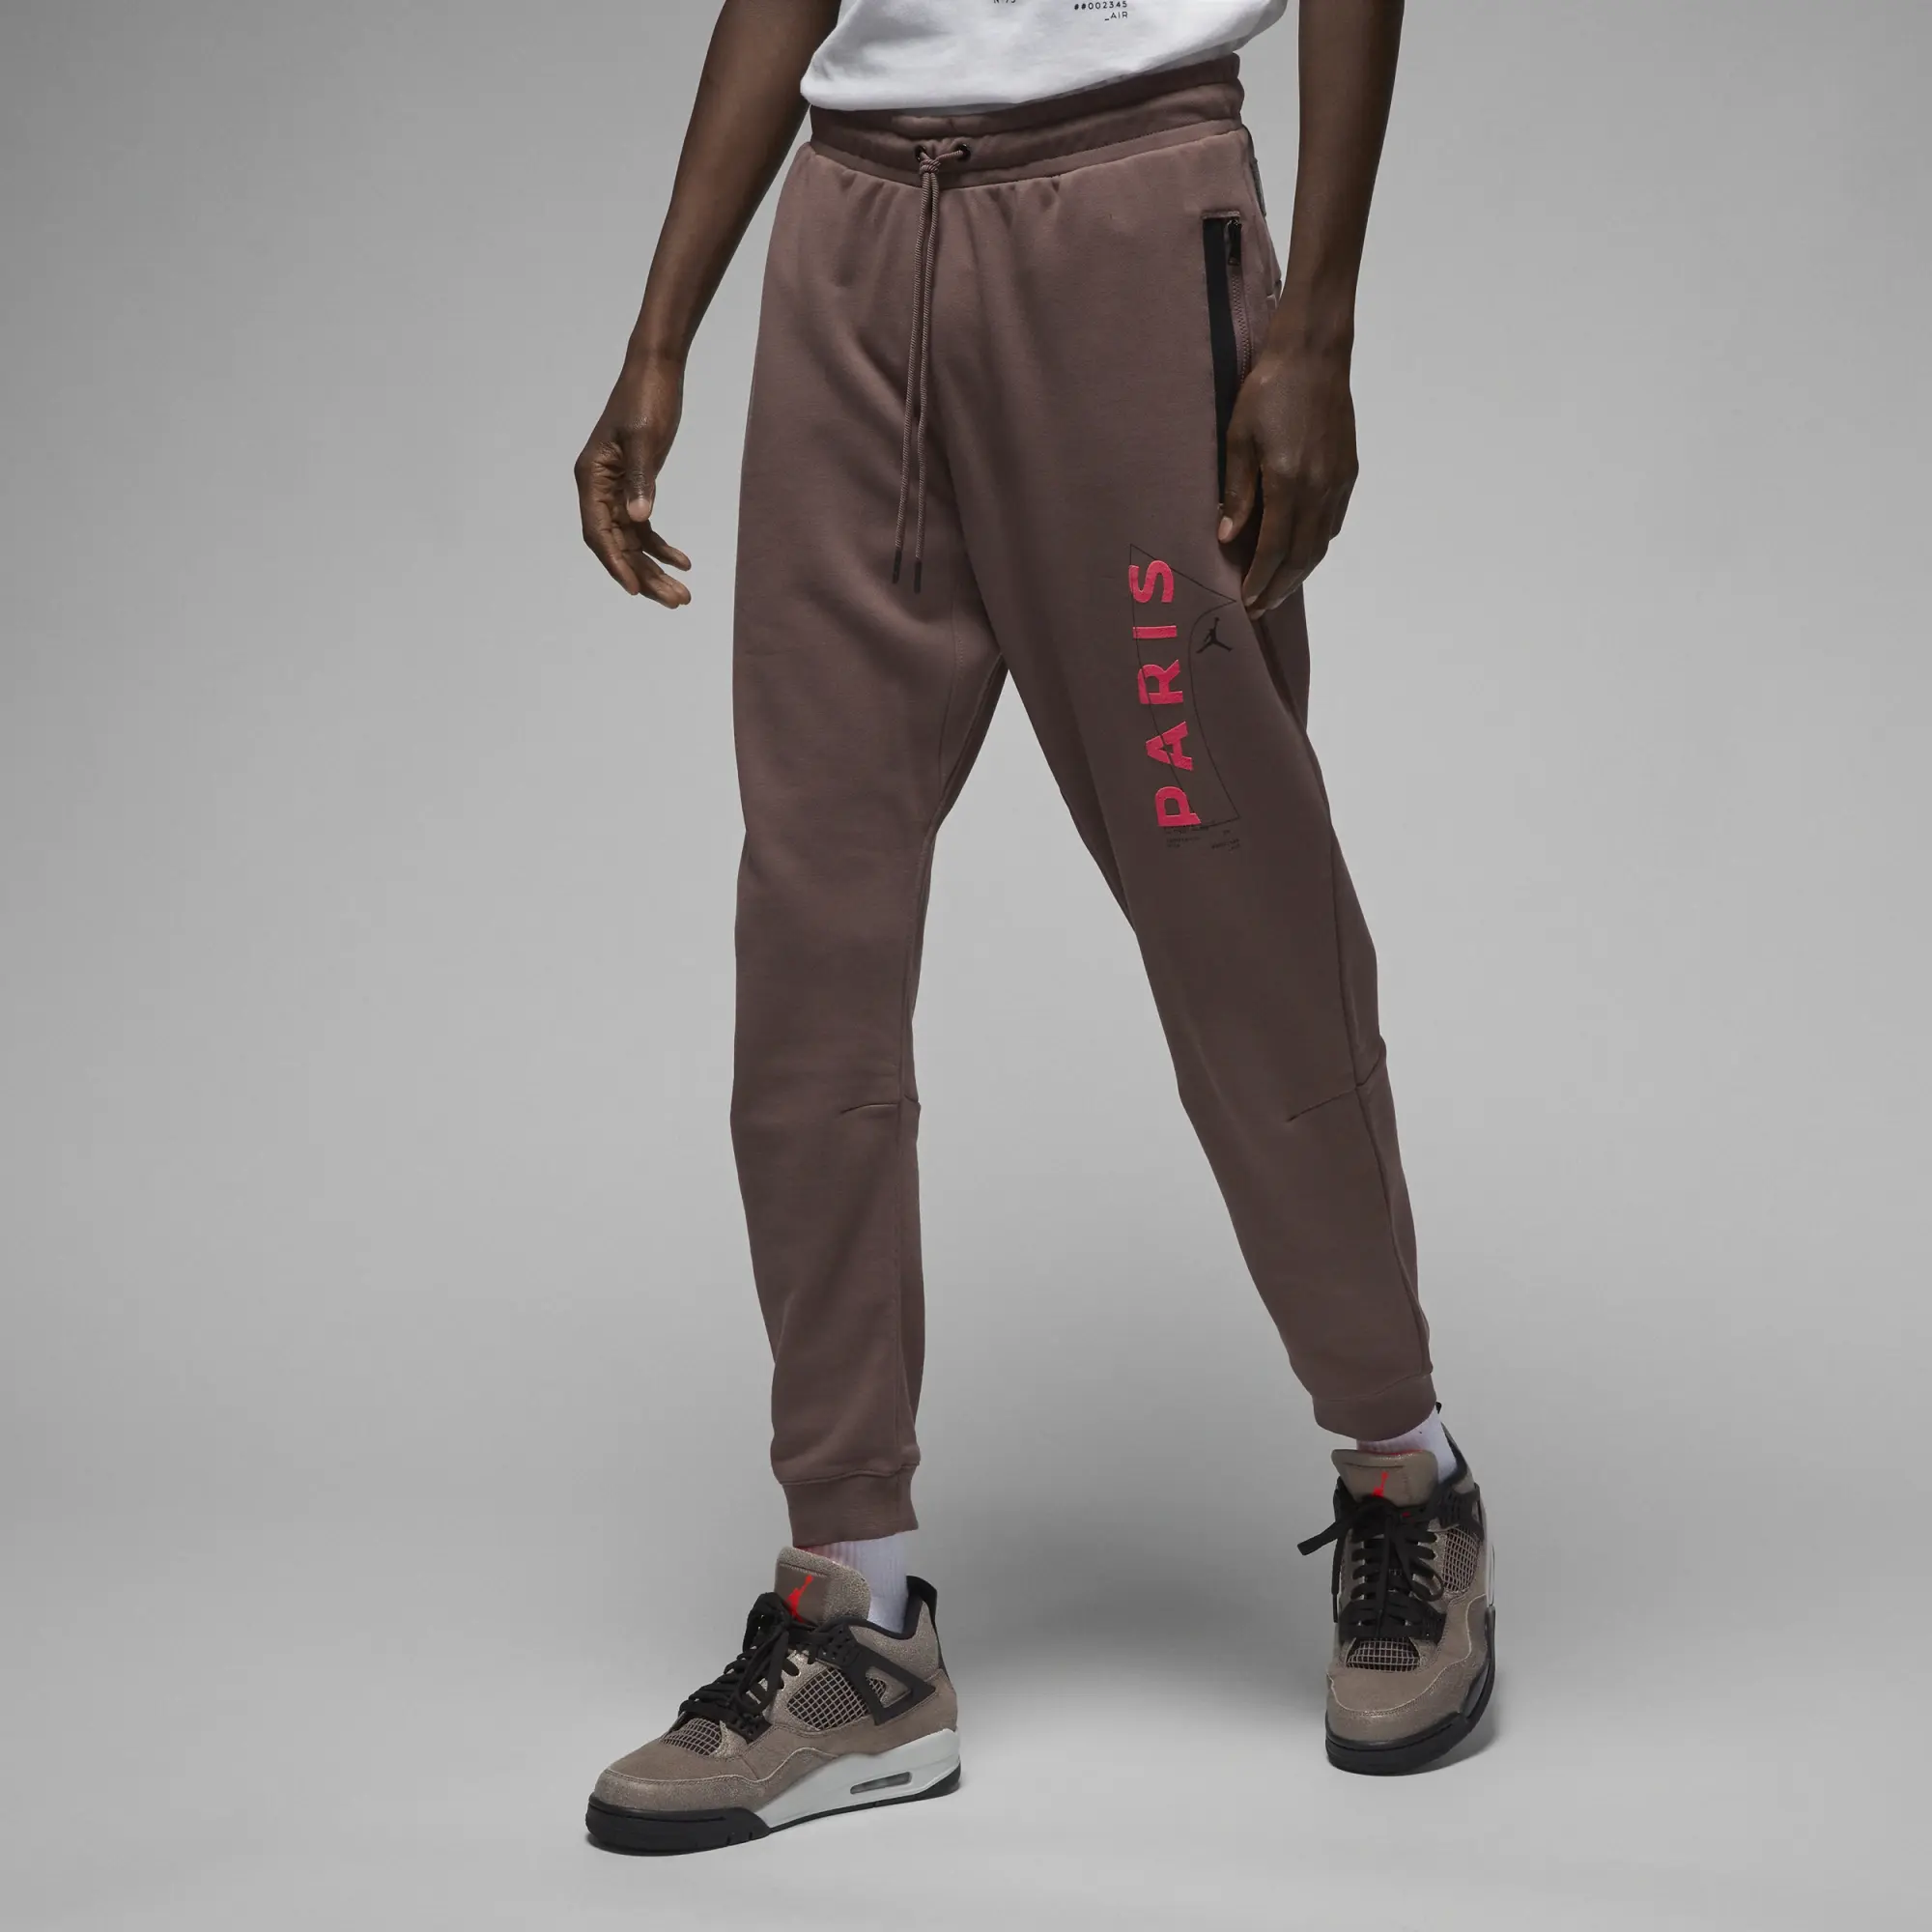 Nike Jordan Paris Saint-Germain Men's Trousers - Brown